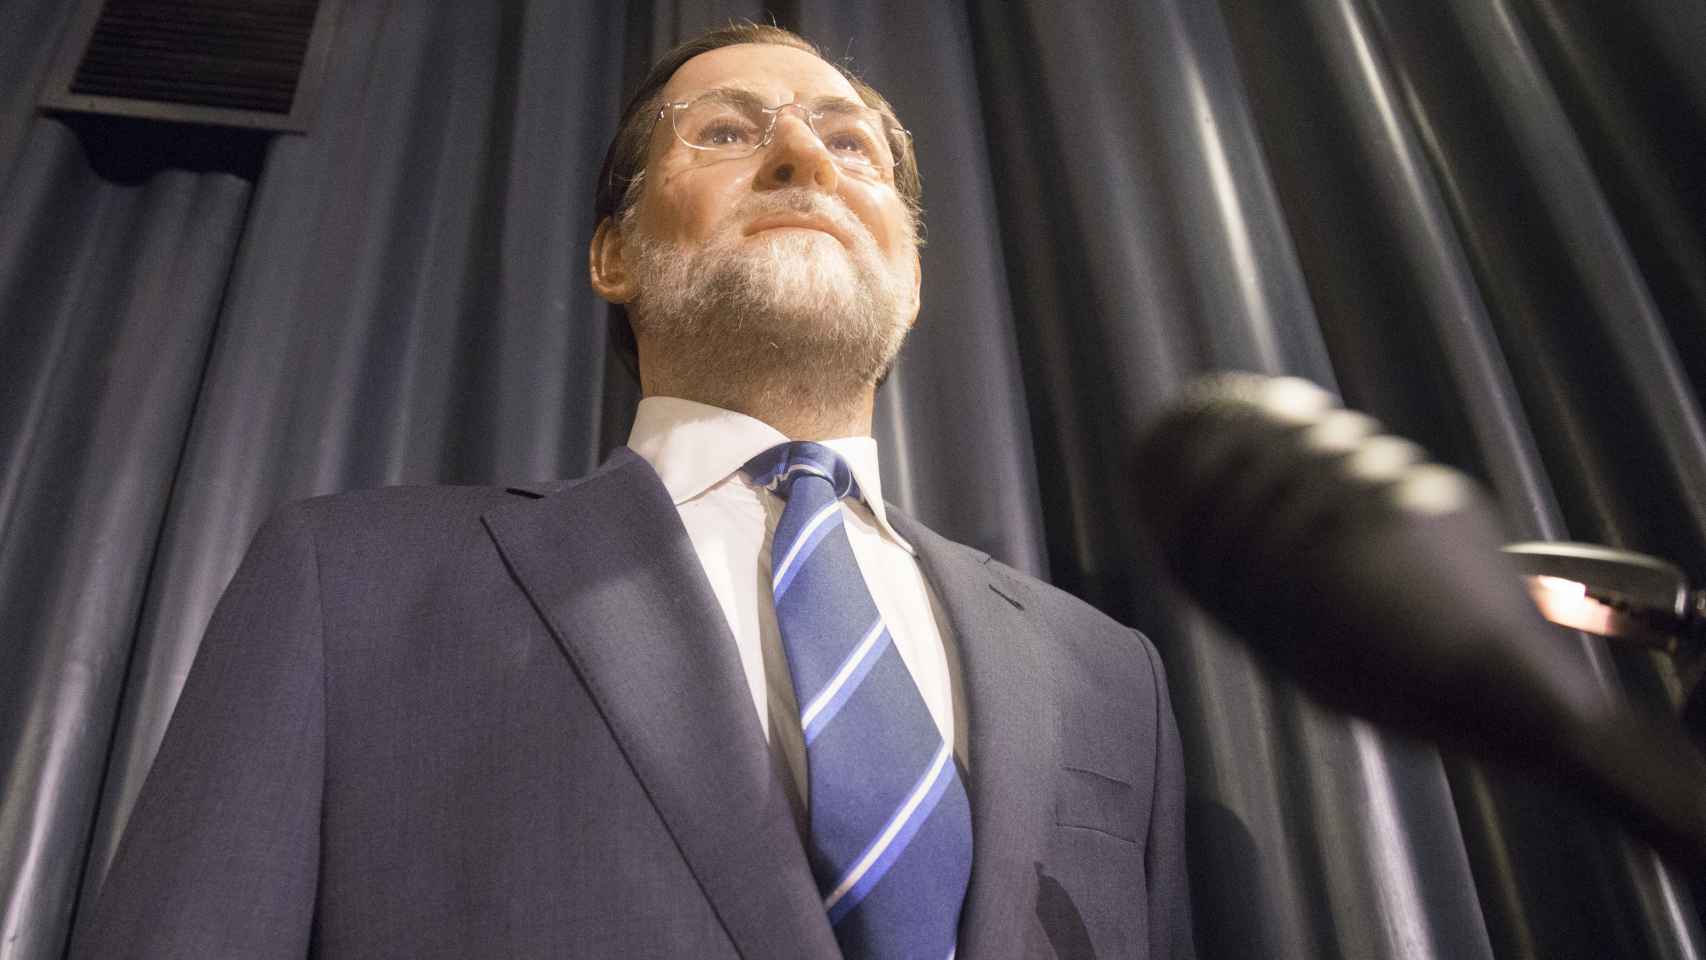 La actual figura de cera de Mariano Rajoy expuesta en el Museo.